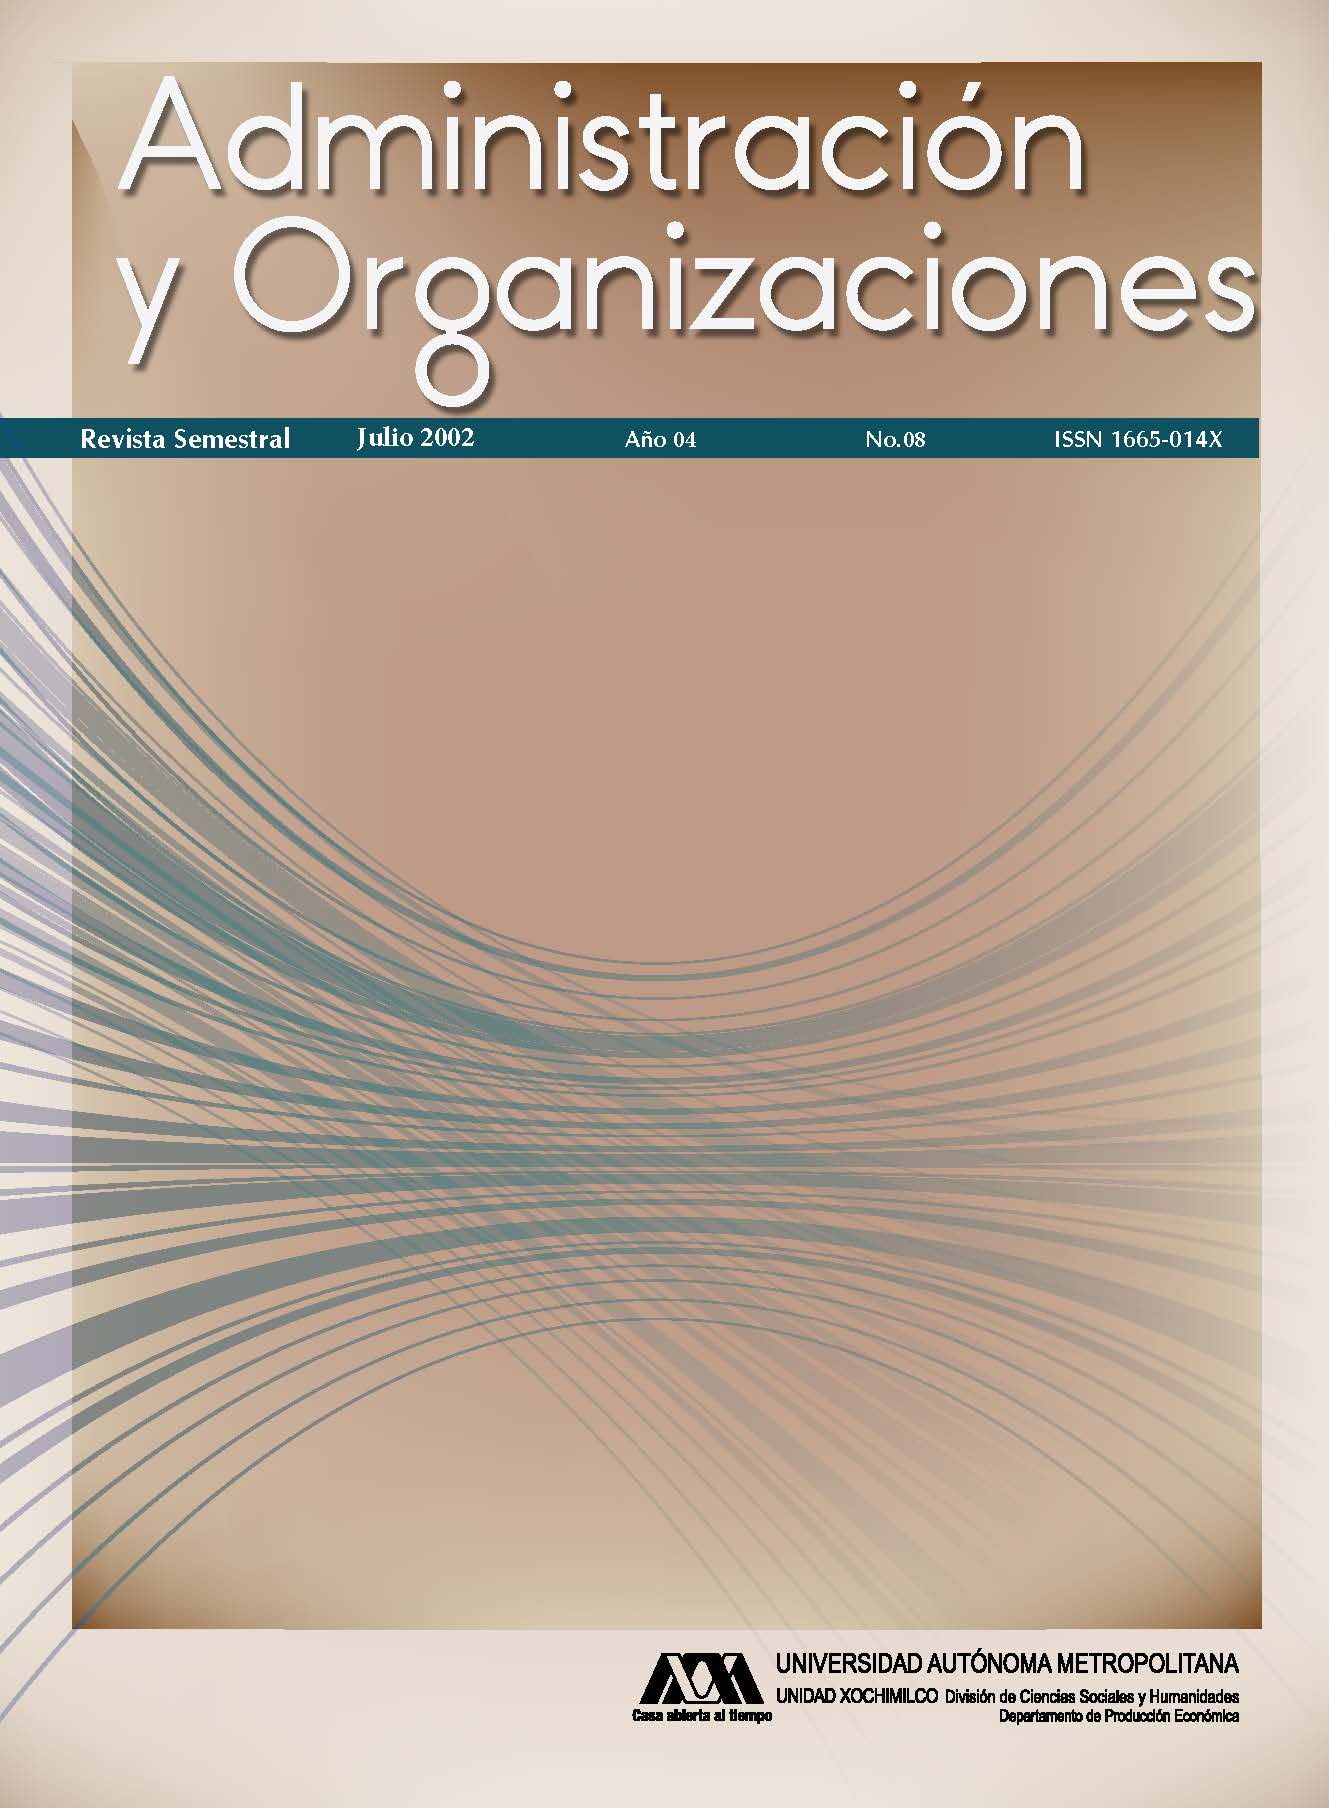 					Ver Vol. 4 Núm. 08 (4): Administración y Organizaciones
				